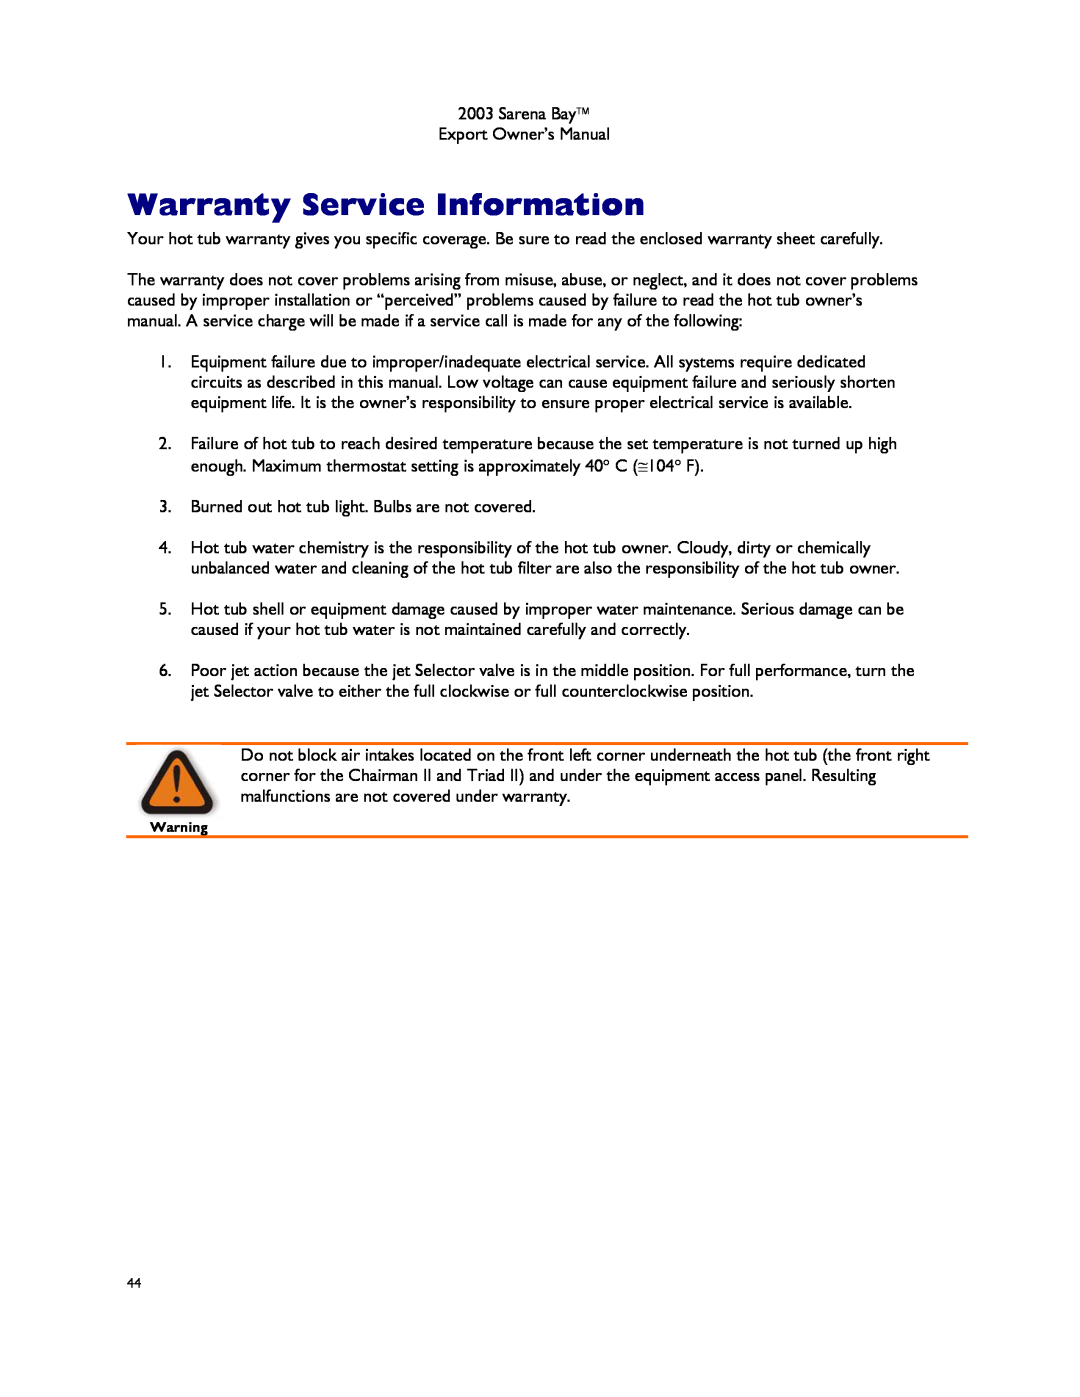 Dimension One Spas Sarena Bay manual Warranty Service Information 